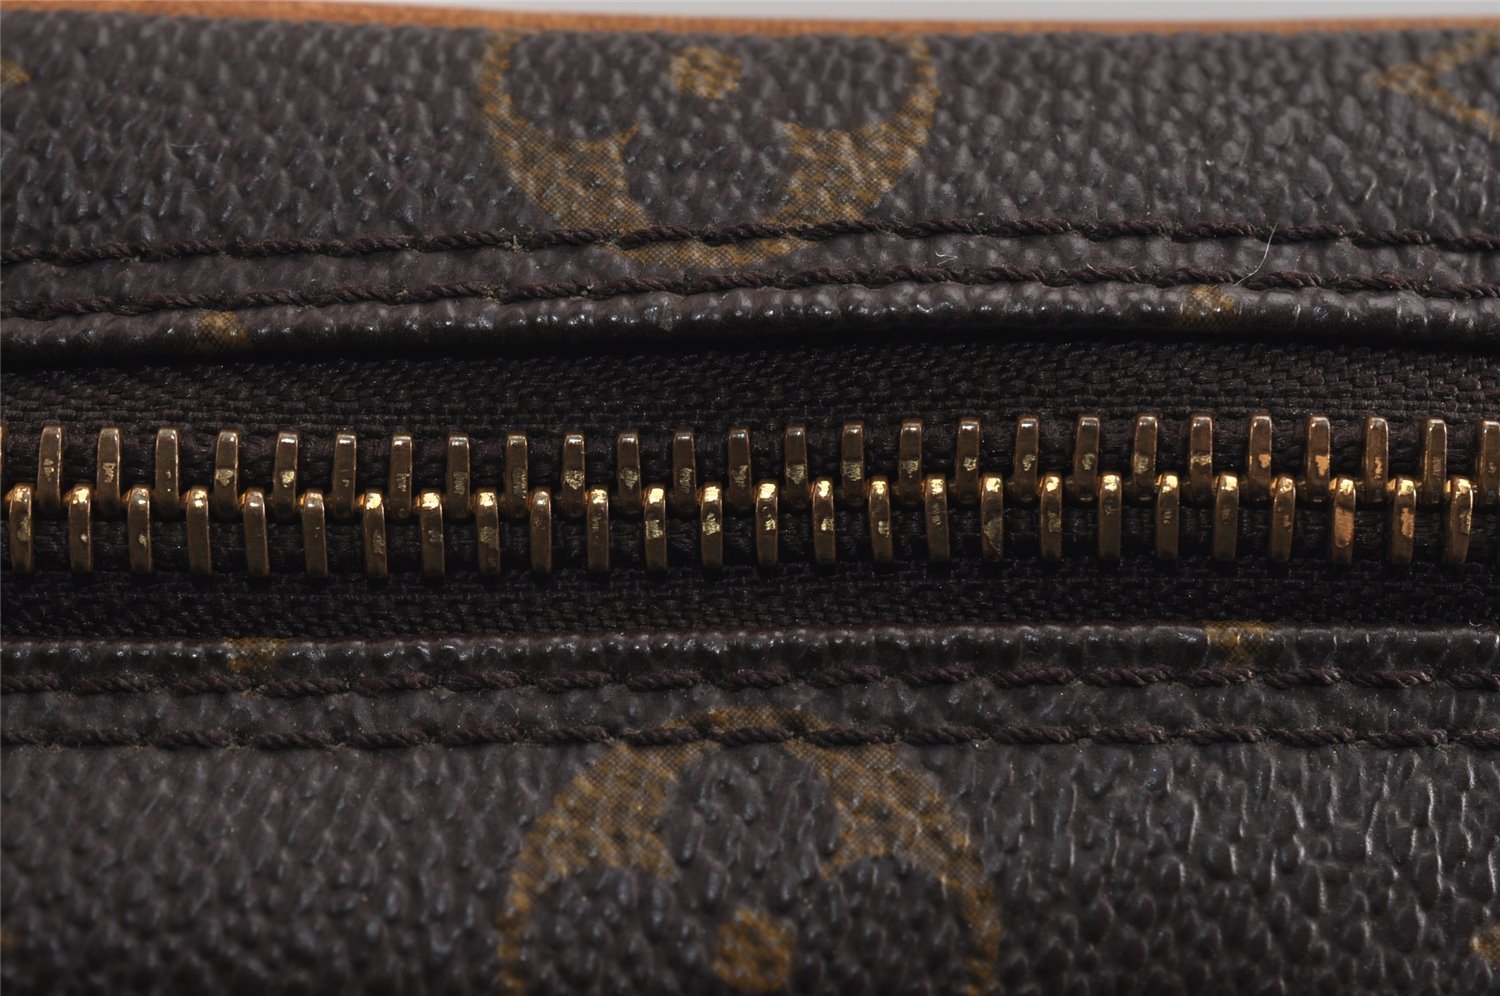 Authentic Louis Vuitton Monogram Mini Amazone Shoulder Cross Bag M45238 LV 9990J